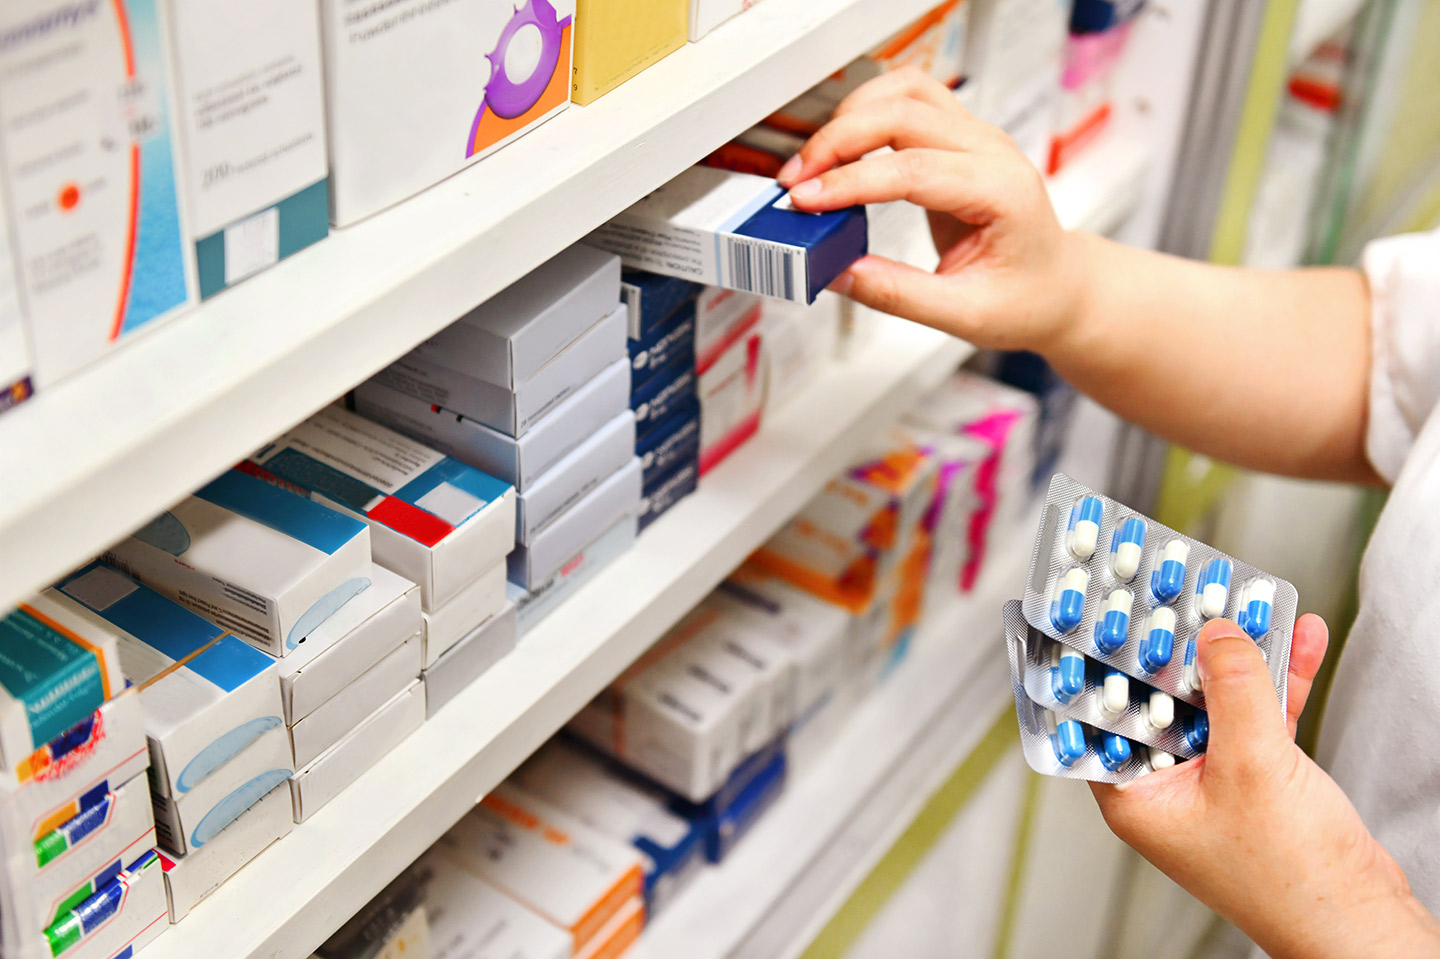 Foto: Zwei Hände sortieren Medikamente in einem Arzneimittel-Regal.